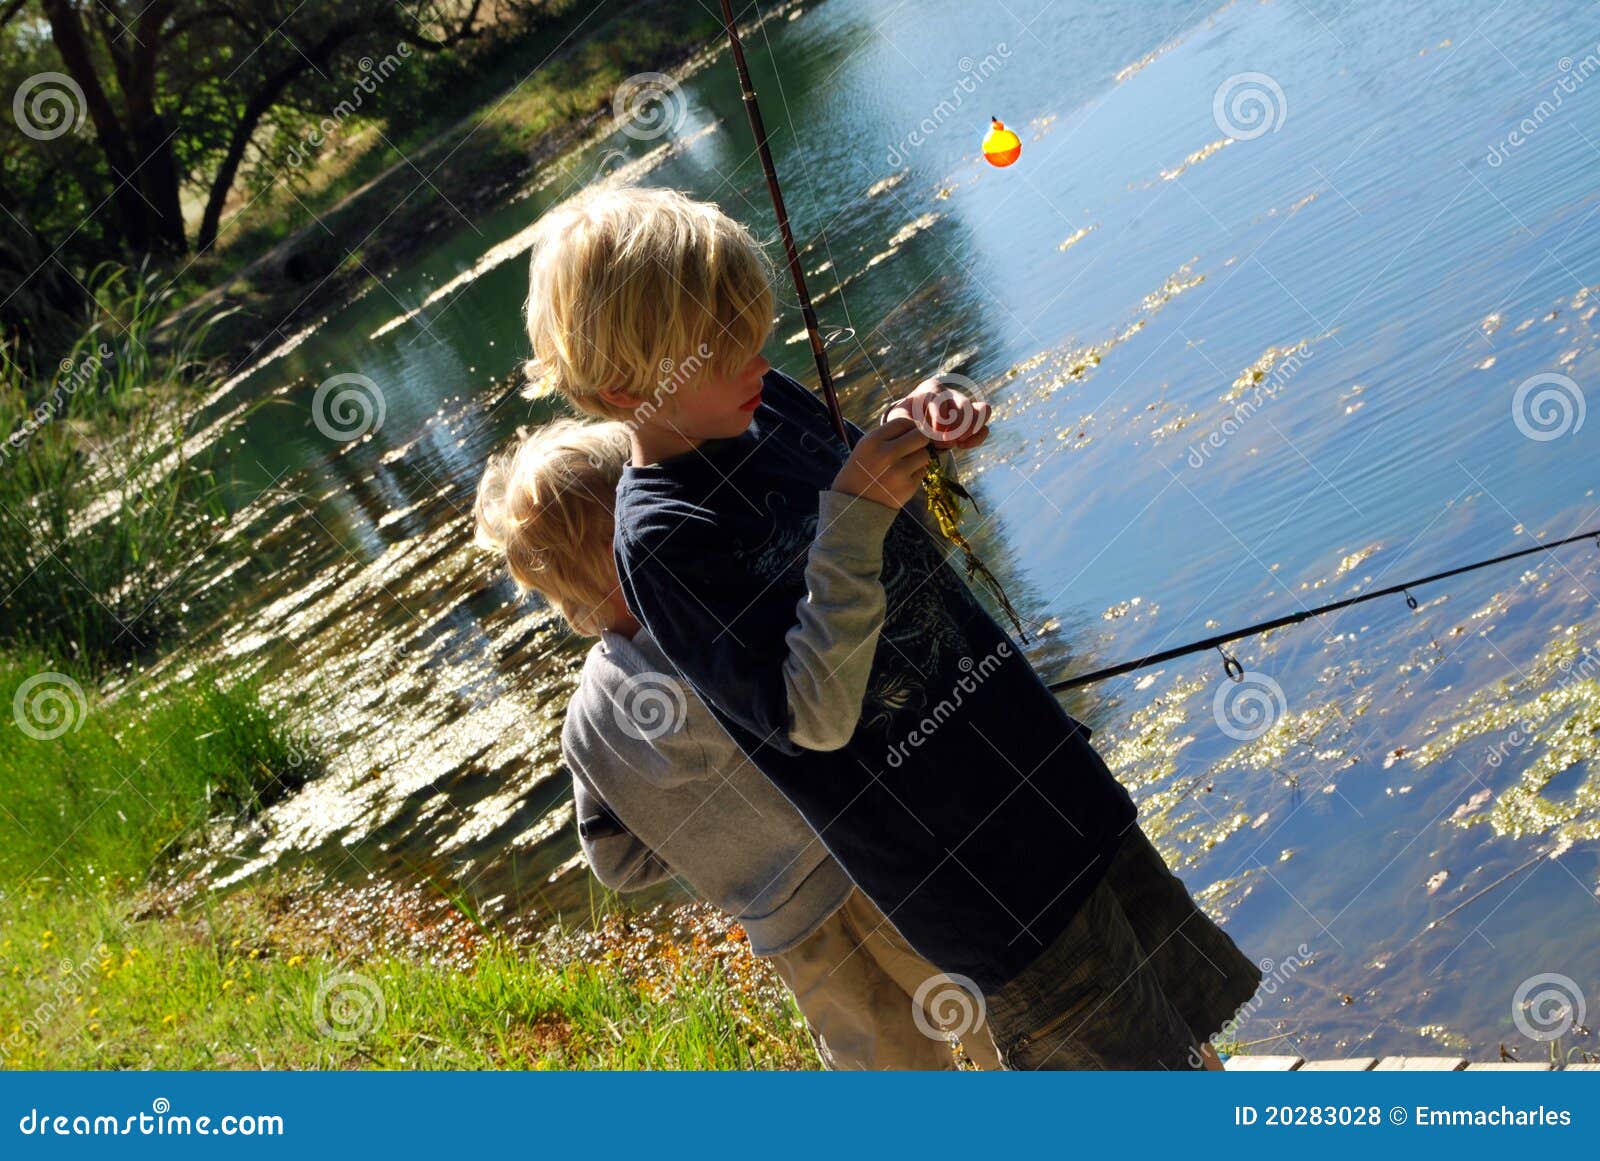 2 Boys Fishing stock photo. Image of fishing, child, pole - 20283028